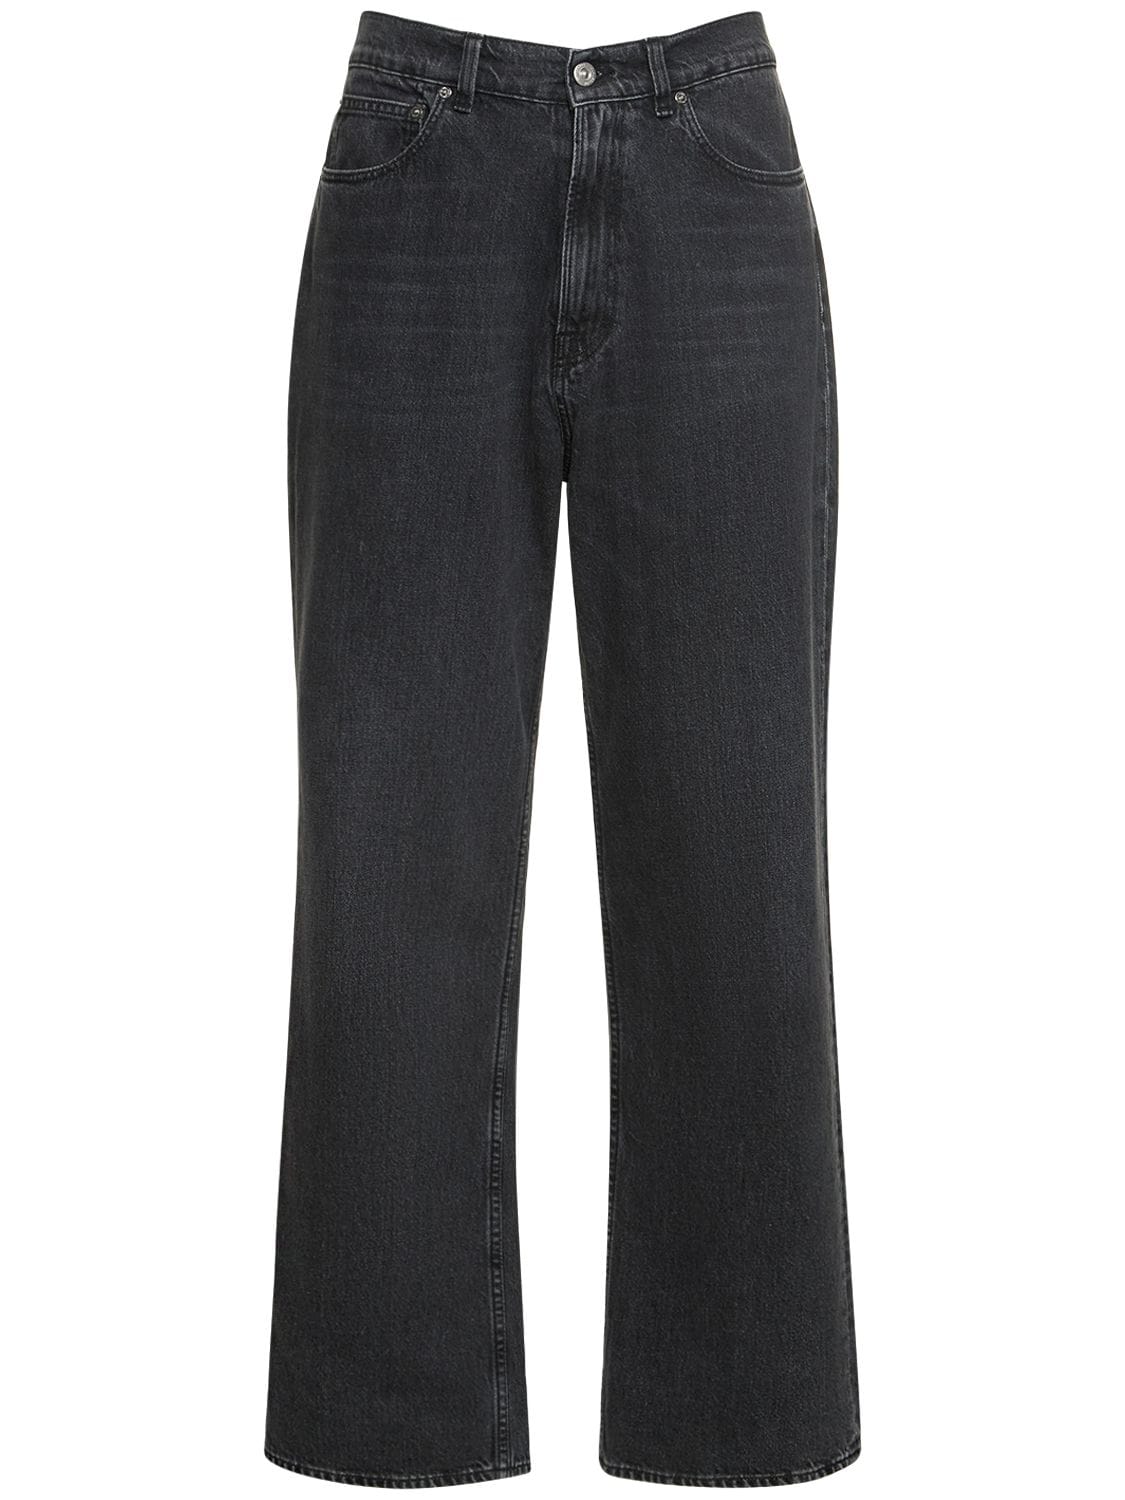 Shop Our Legacy 25.5cm Third Cut Cotton Denim Jeans In Supergrey